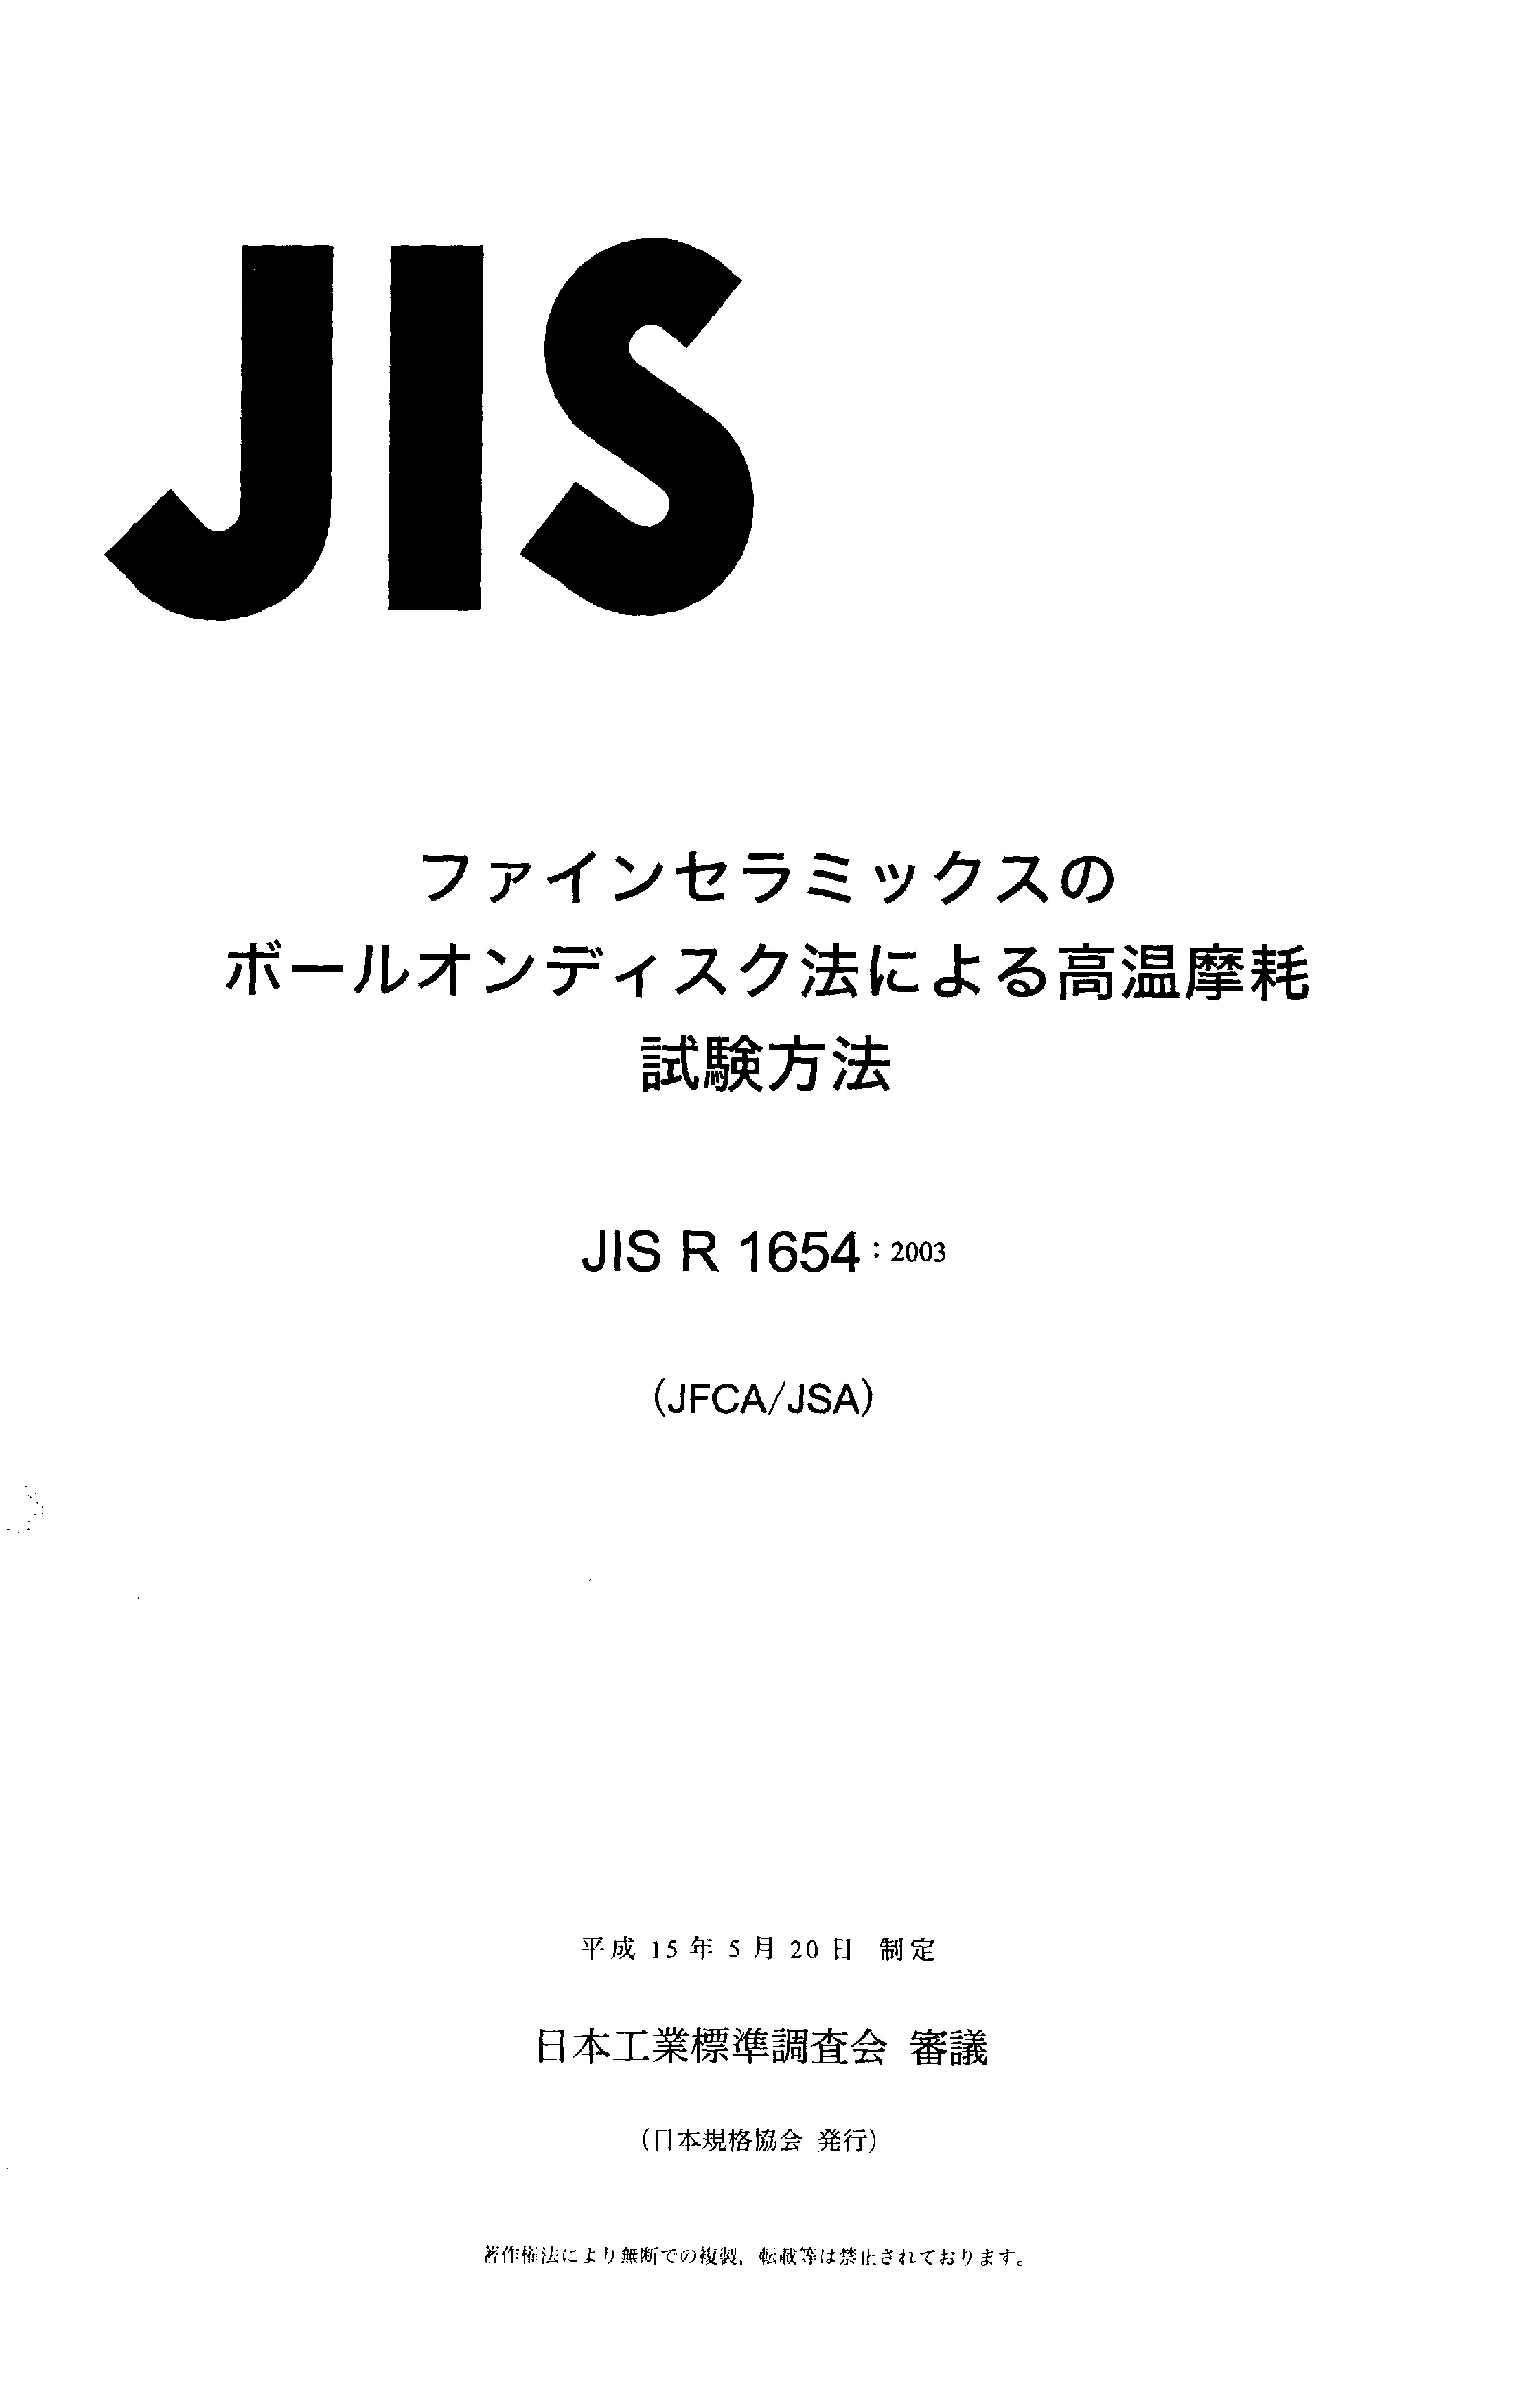 JIS R 1654:2003封面图